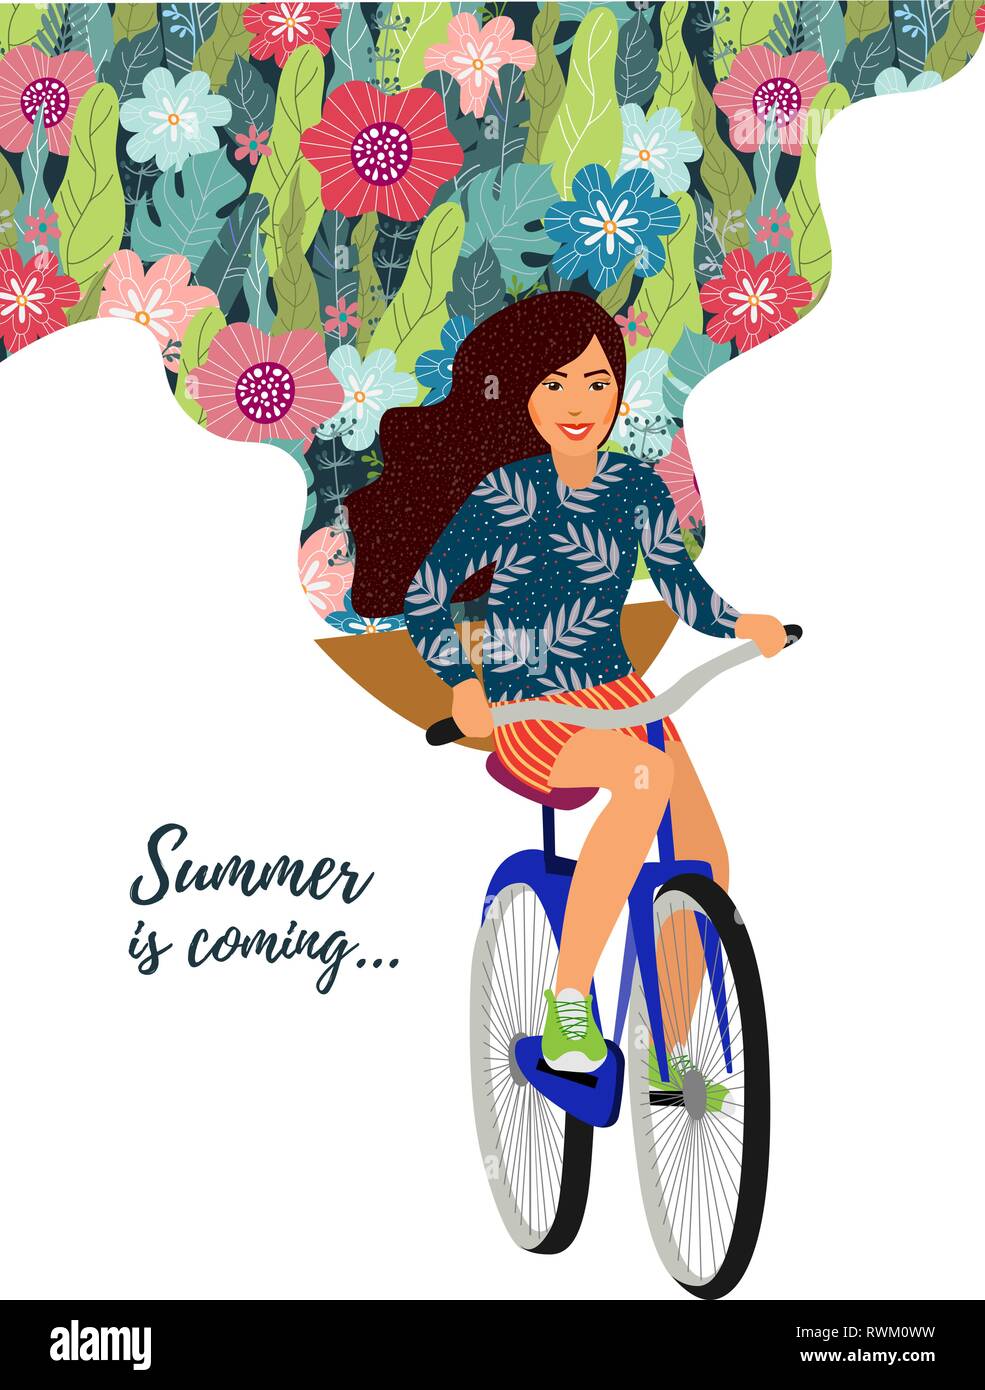 L'été arrive. Vector illustration avec cute cartoon girl sur un vélo et floral background sur fond blanc Illustration de Vecteur